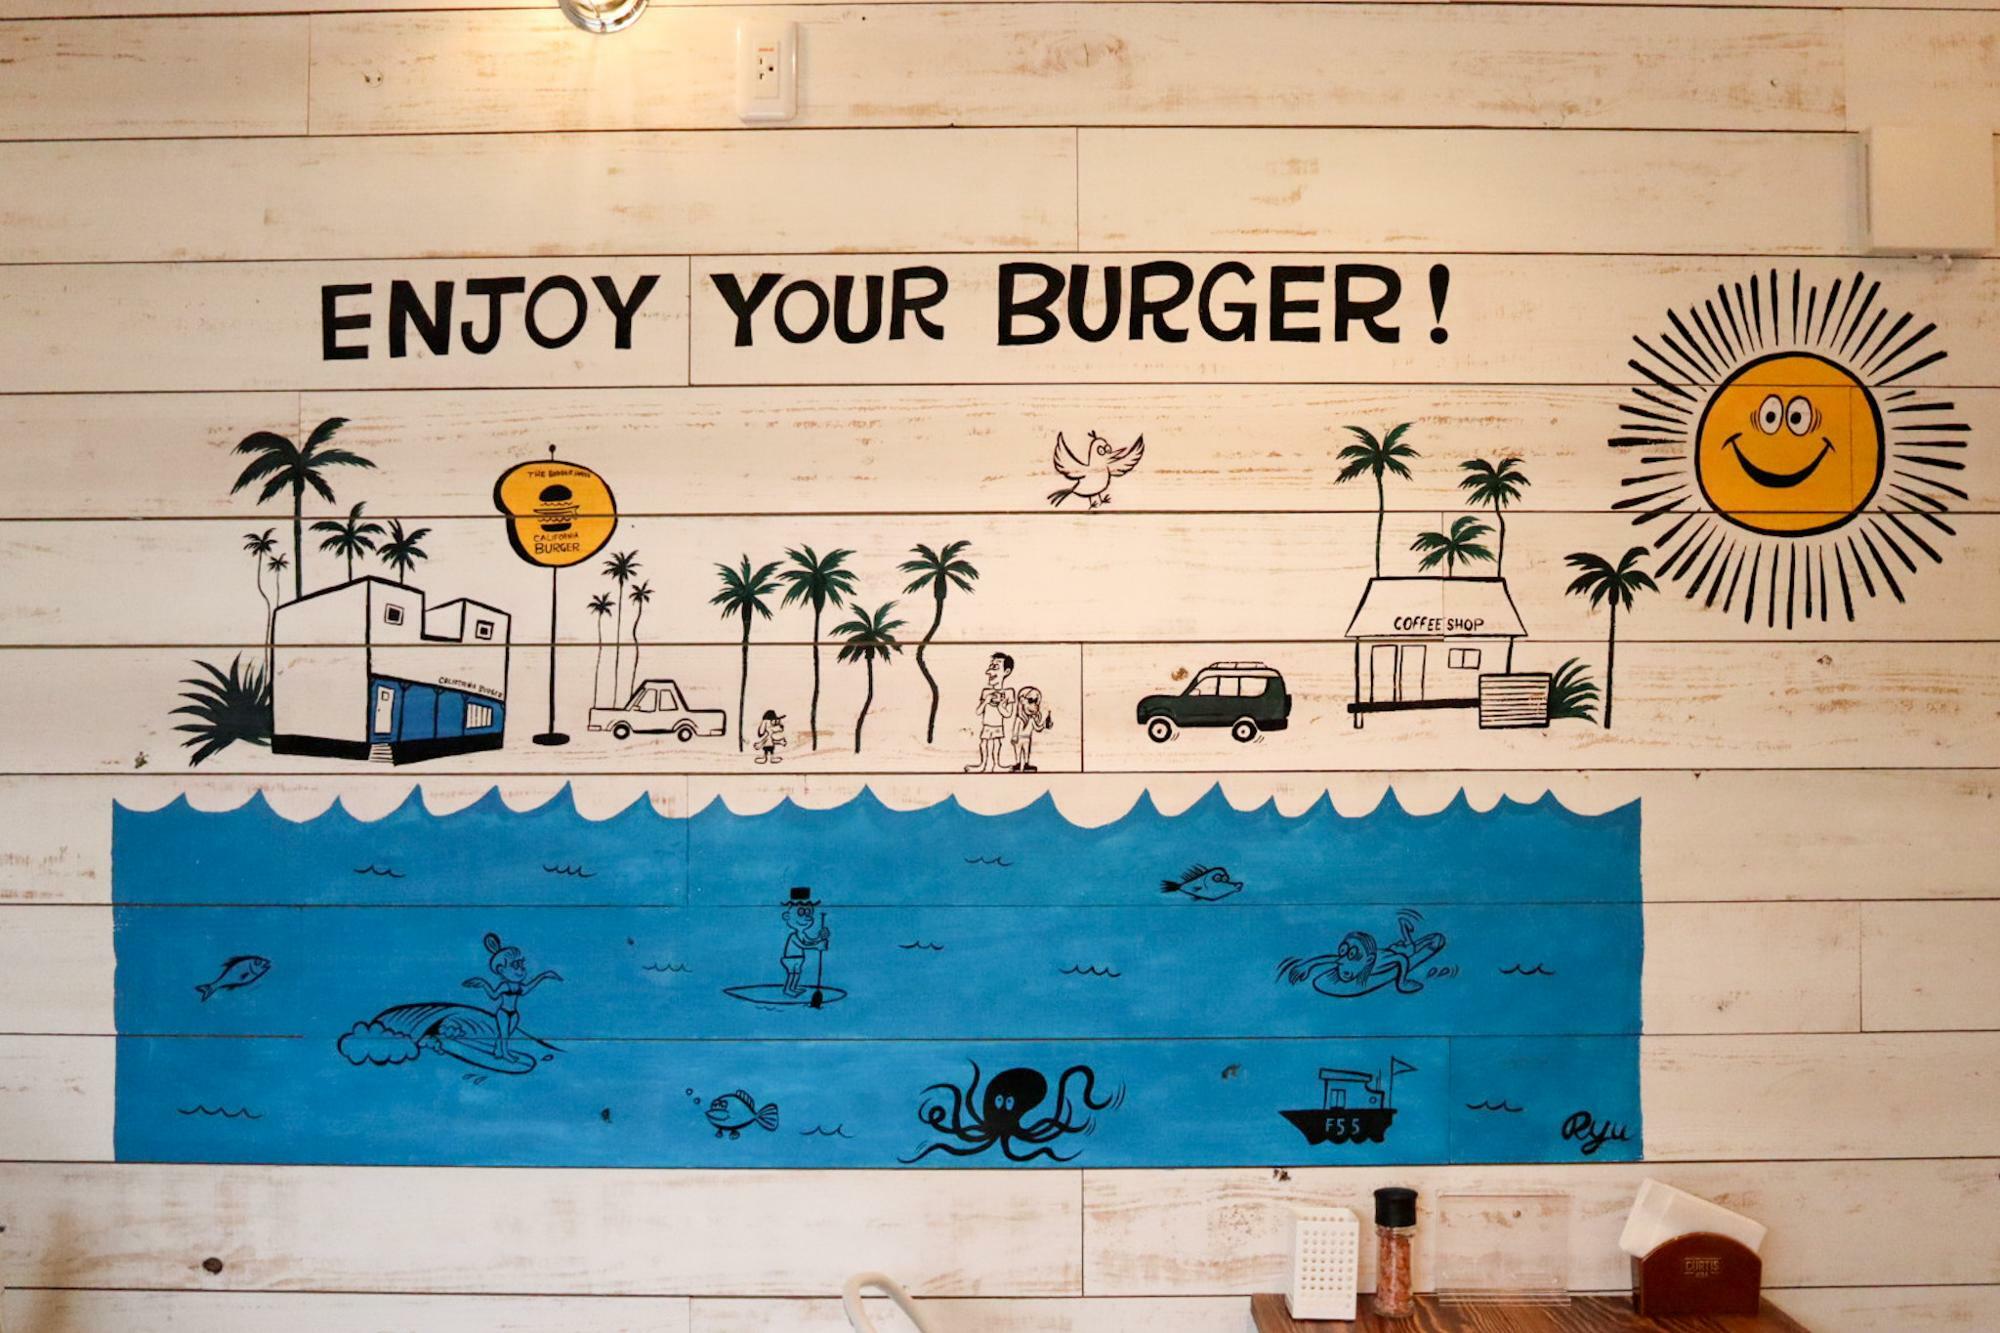 カリフォルニアバーガー店内の壁画